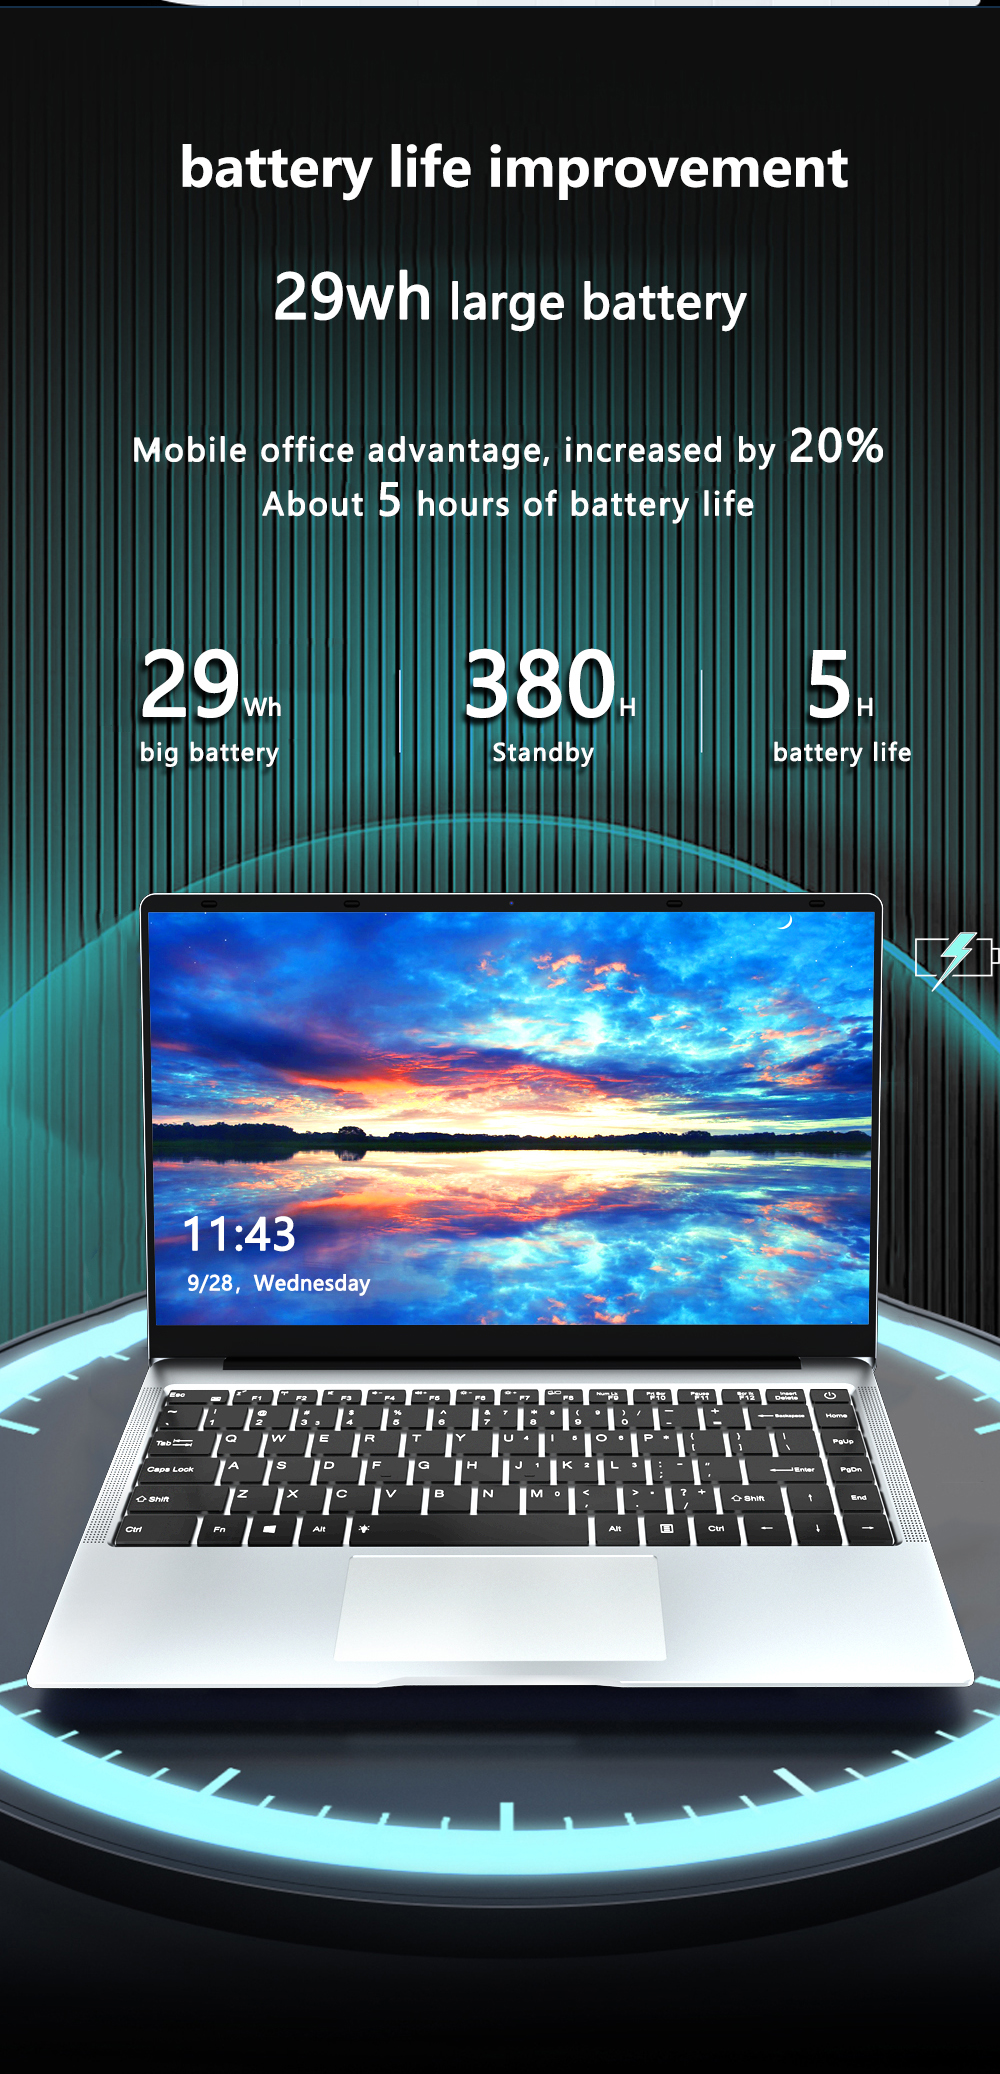 รูปภาพของ 【1 Year Warranty】【Free Gifts】KUU XBOOK 2 Laptop St Online Class Laptop 14.1 Inch 1920x1080 FHD IPS Screen Intel J4105 8G RAM 512G SSD Turbo Up to 2.5 GHz Full-size Keyboard Windows 11 Ultra-thin Portable Computer